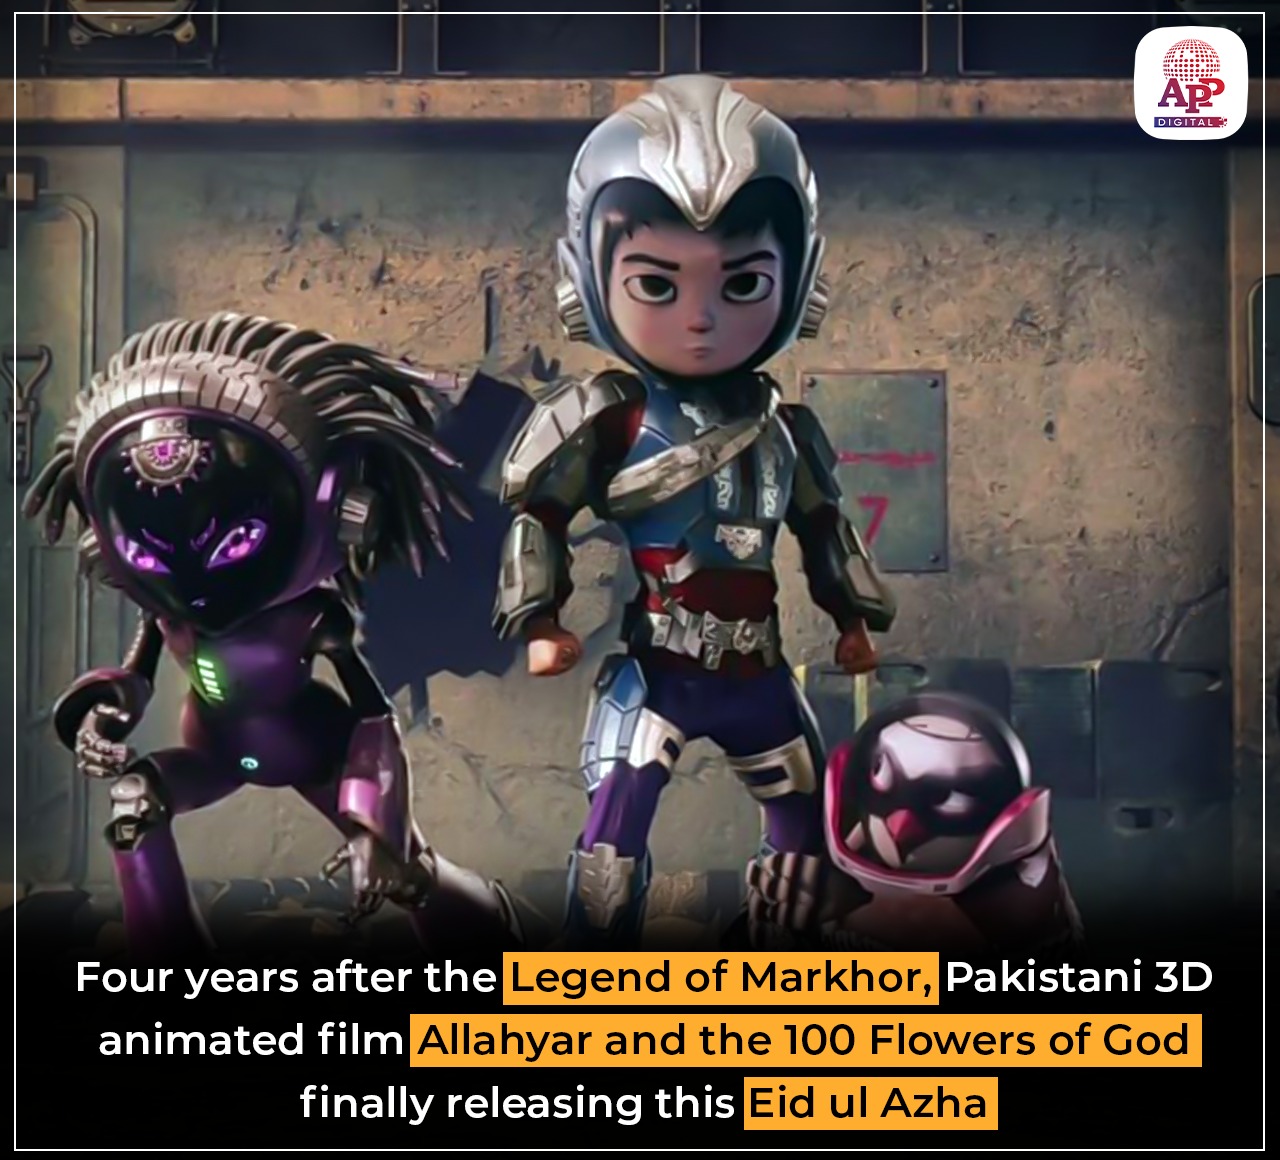 Pakistani 3D animated film releasing this Eid ul Azha